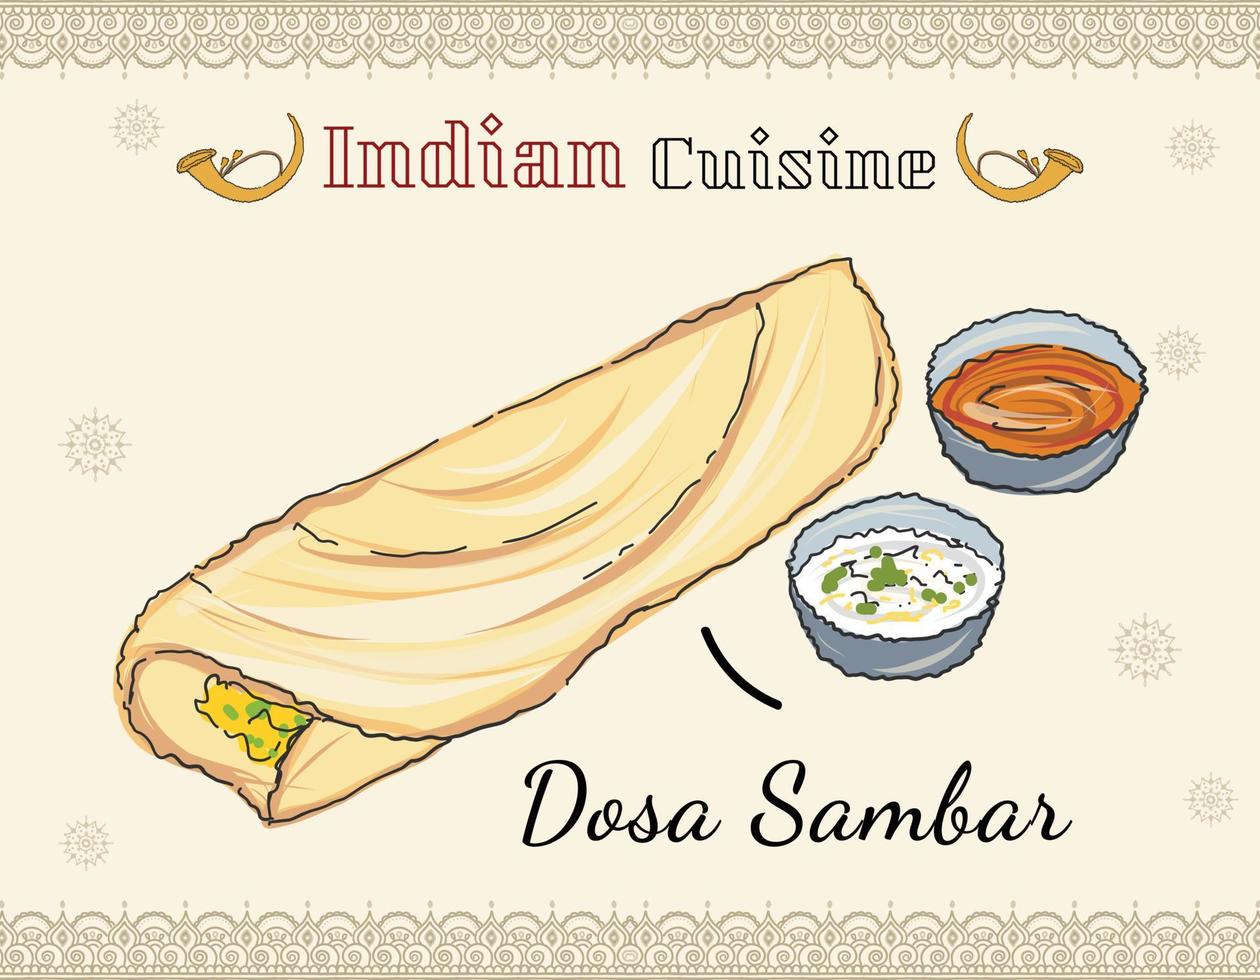 paper masala dosa, comida tradicional del sur de la india servida con sambhar y chutney de coco. comida tradicional del sur de la india. vector